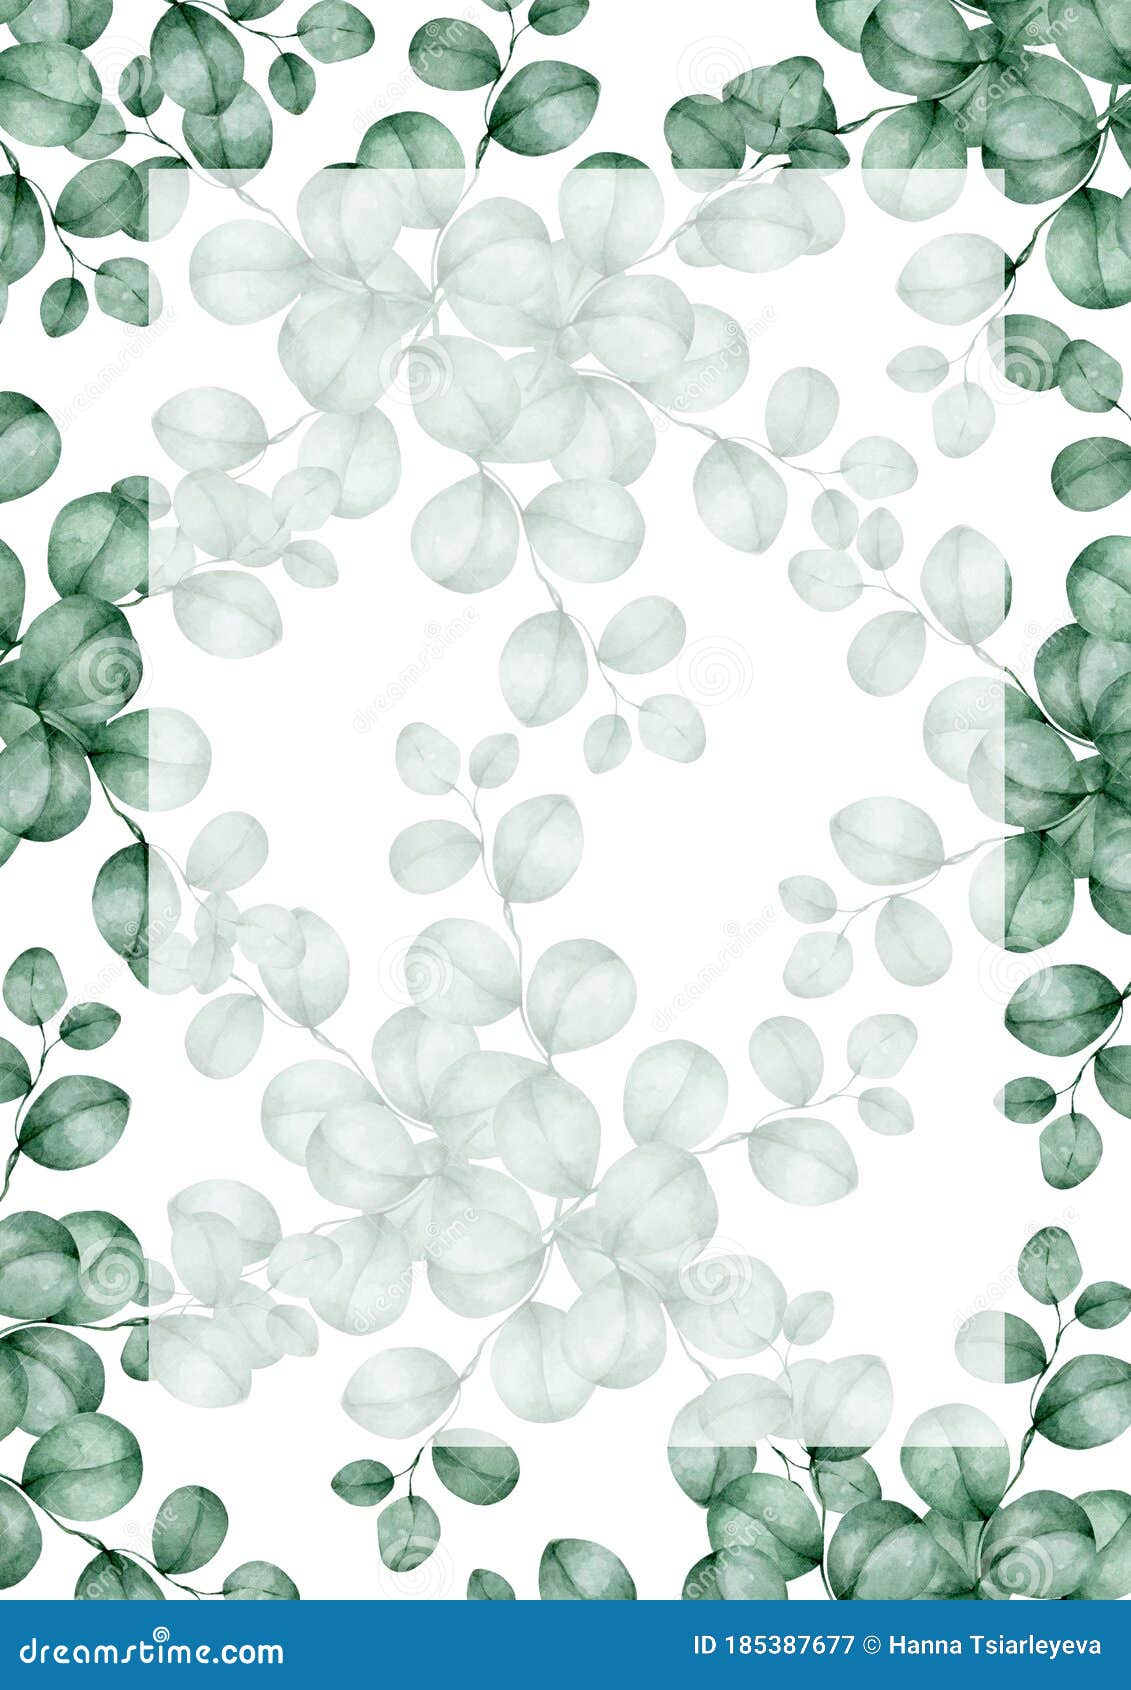 Khung ảnh dọc hoa xanh trên nền trắng: Những bông hoa xanh trên nền trắng luôn mang đến cảm giác tươi mới mỗi khi chúng ta nhìn vào. Và khi được thiết kế dưới dạng khung ảnh dọc với chiếc giá treo, chúng ta lại cảm nhận được sự thanh lịch và tinh tế ẩn chứa trong từng đường nét của bức tranh. 